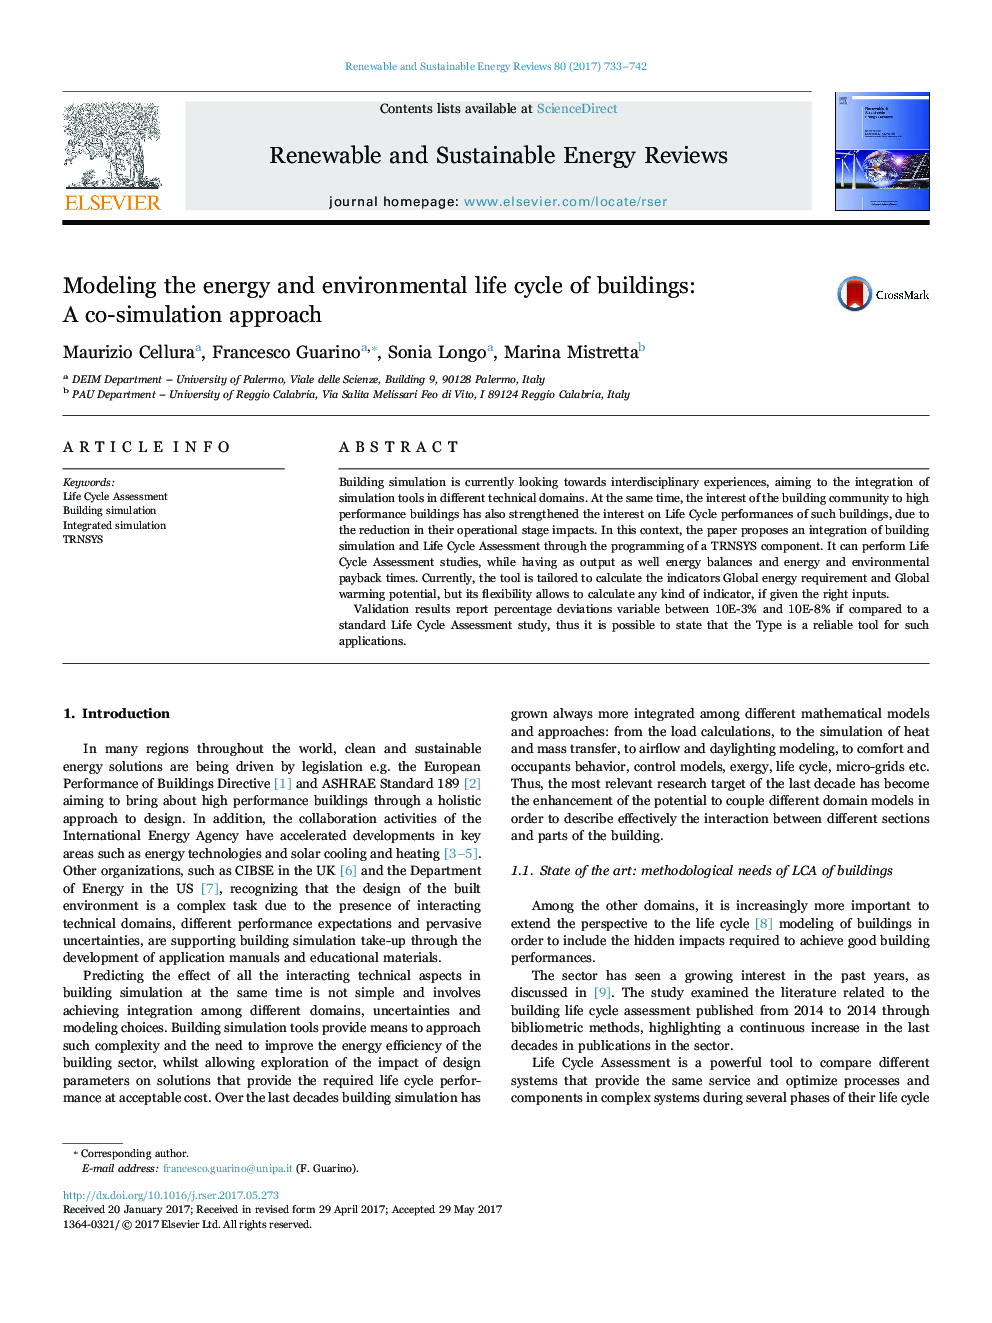 مدل سازی انرژی و چرخه عمر زیست محیطی ساختمان ها: رویکرد همکاری شبیه سازی 